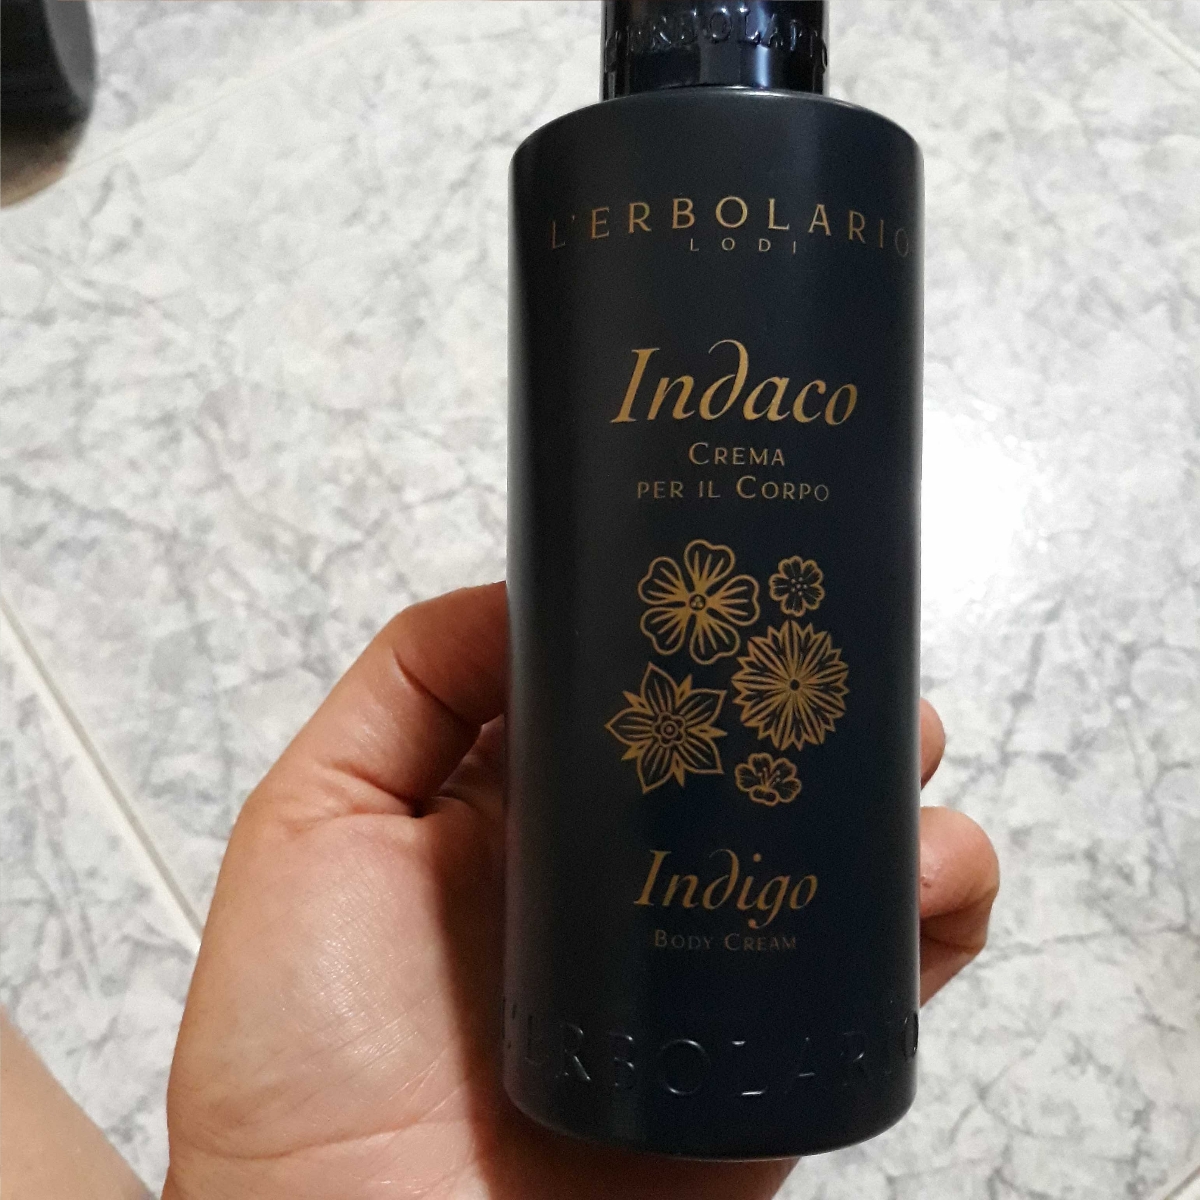 L'Erbolario Crema per il corpo Indaco Reviews | abillion